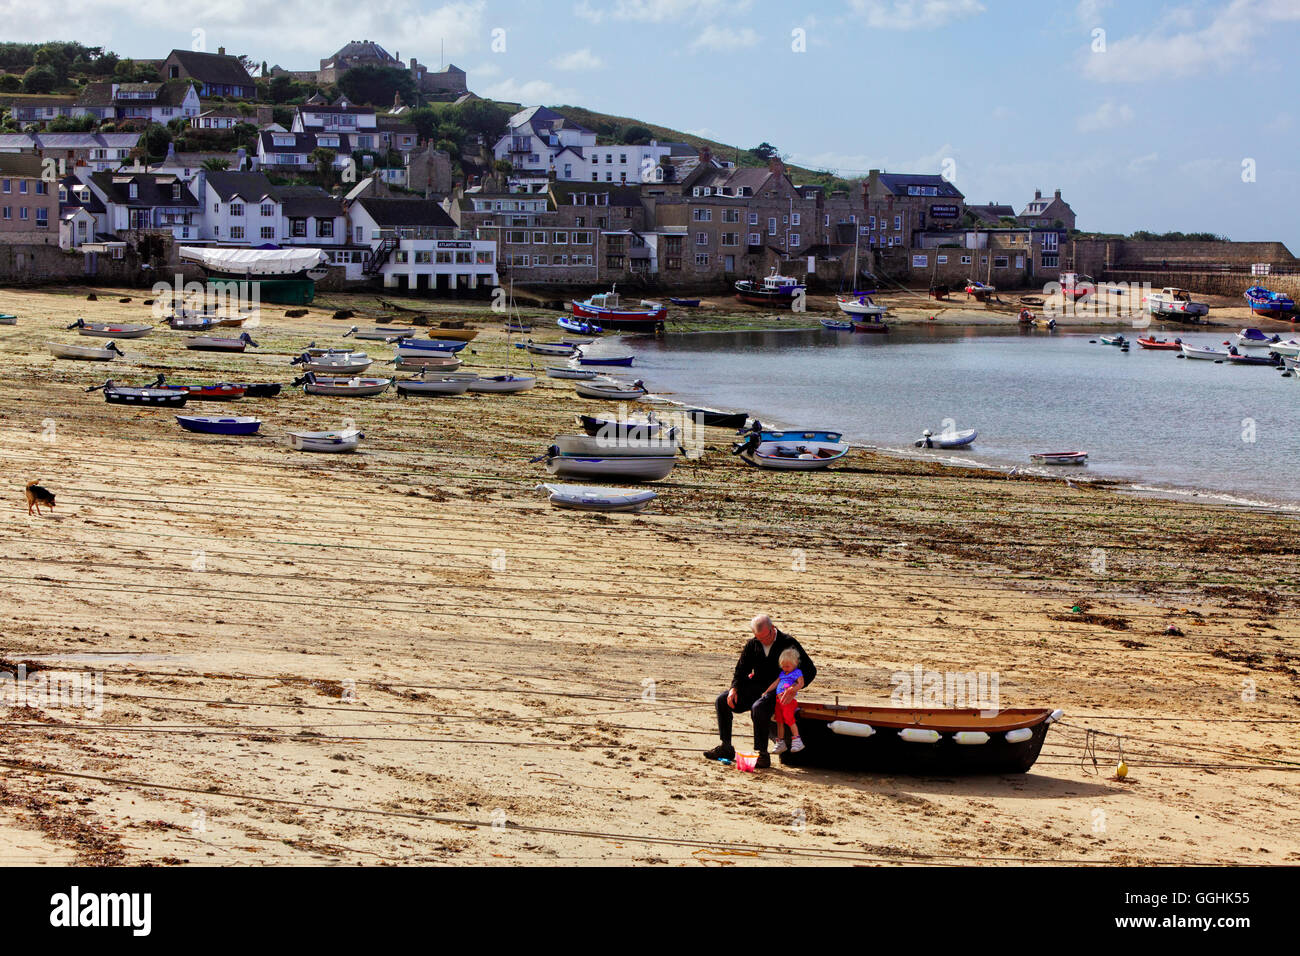 Hombre y niño en la playa, Hugh ciudad, St.Mary's, Isles of Scilly, Cornwall, Inglaterra, Gran Bretaña Foto de stock